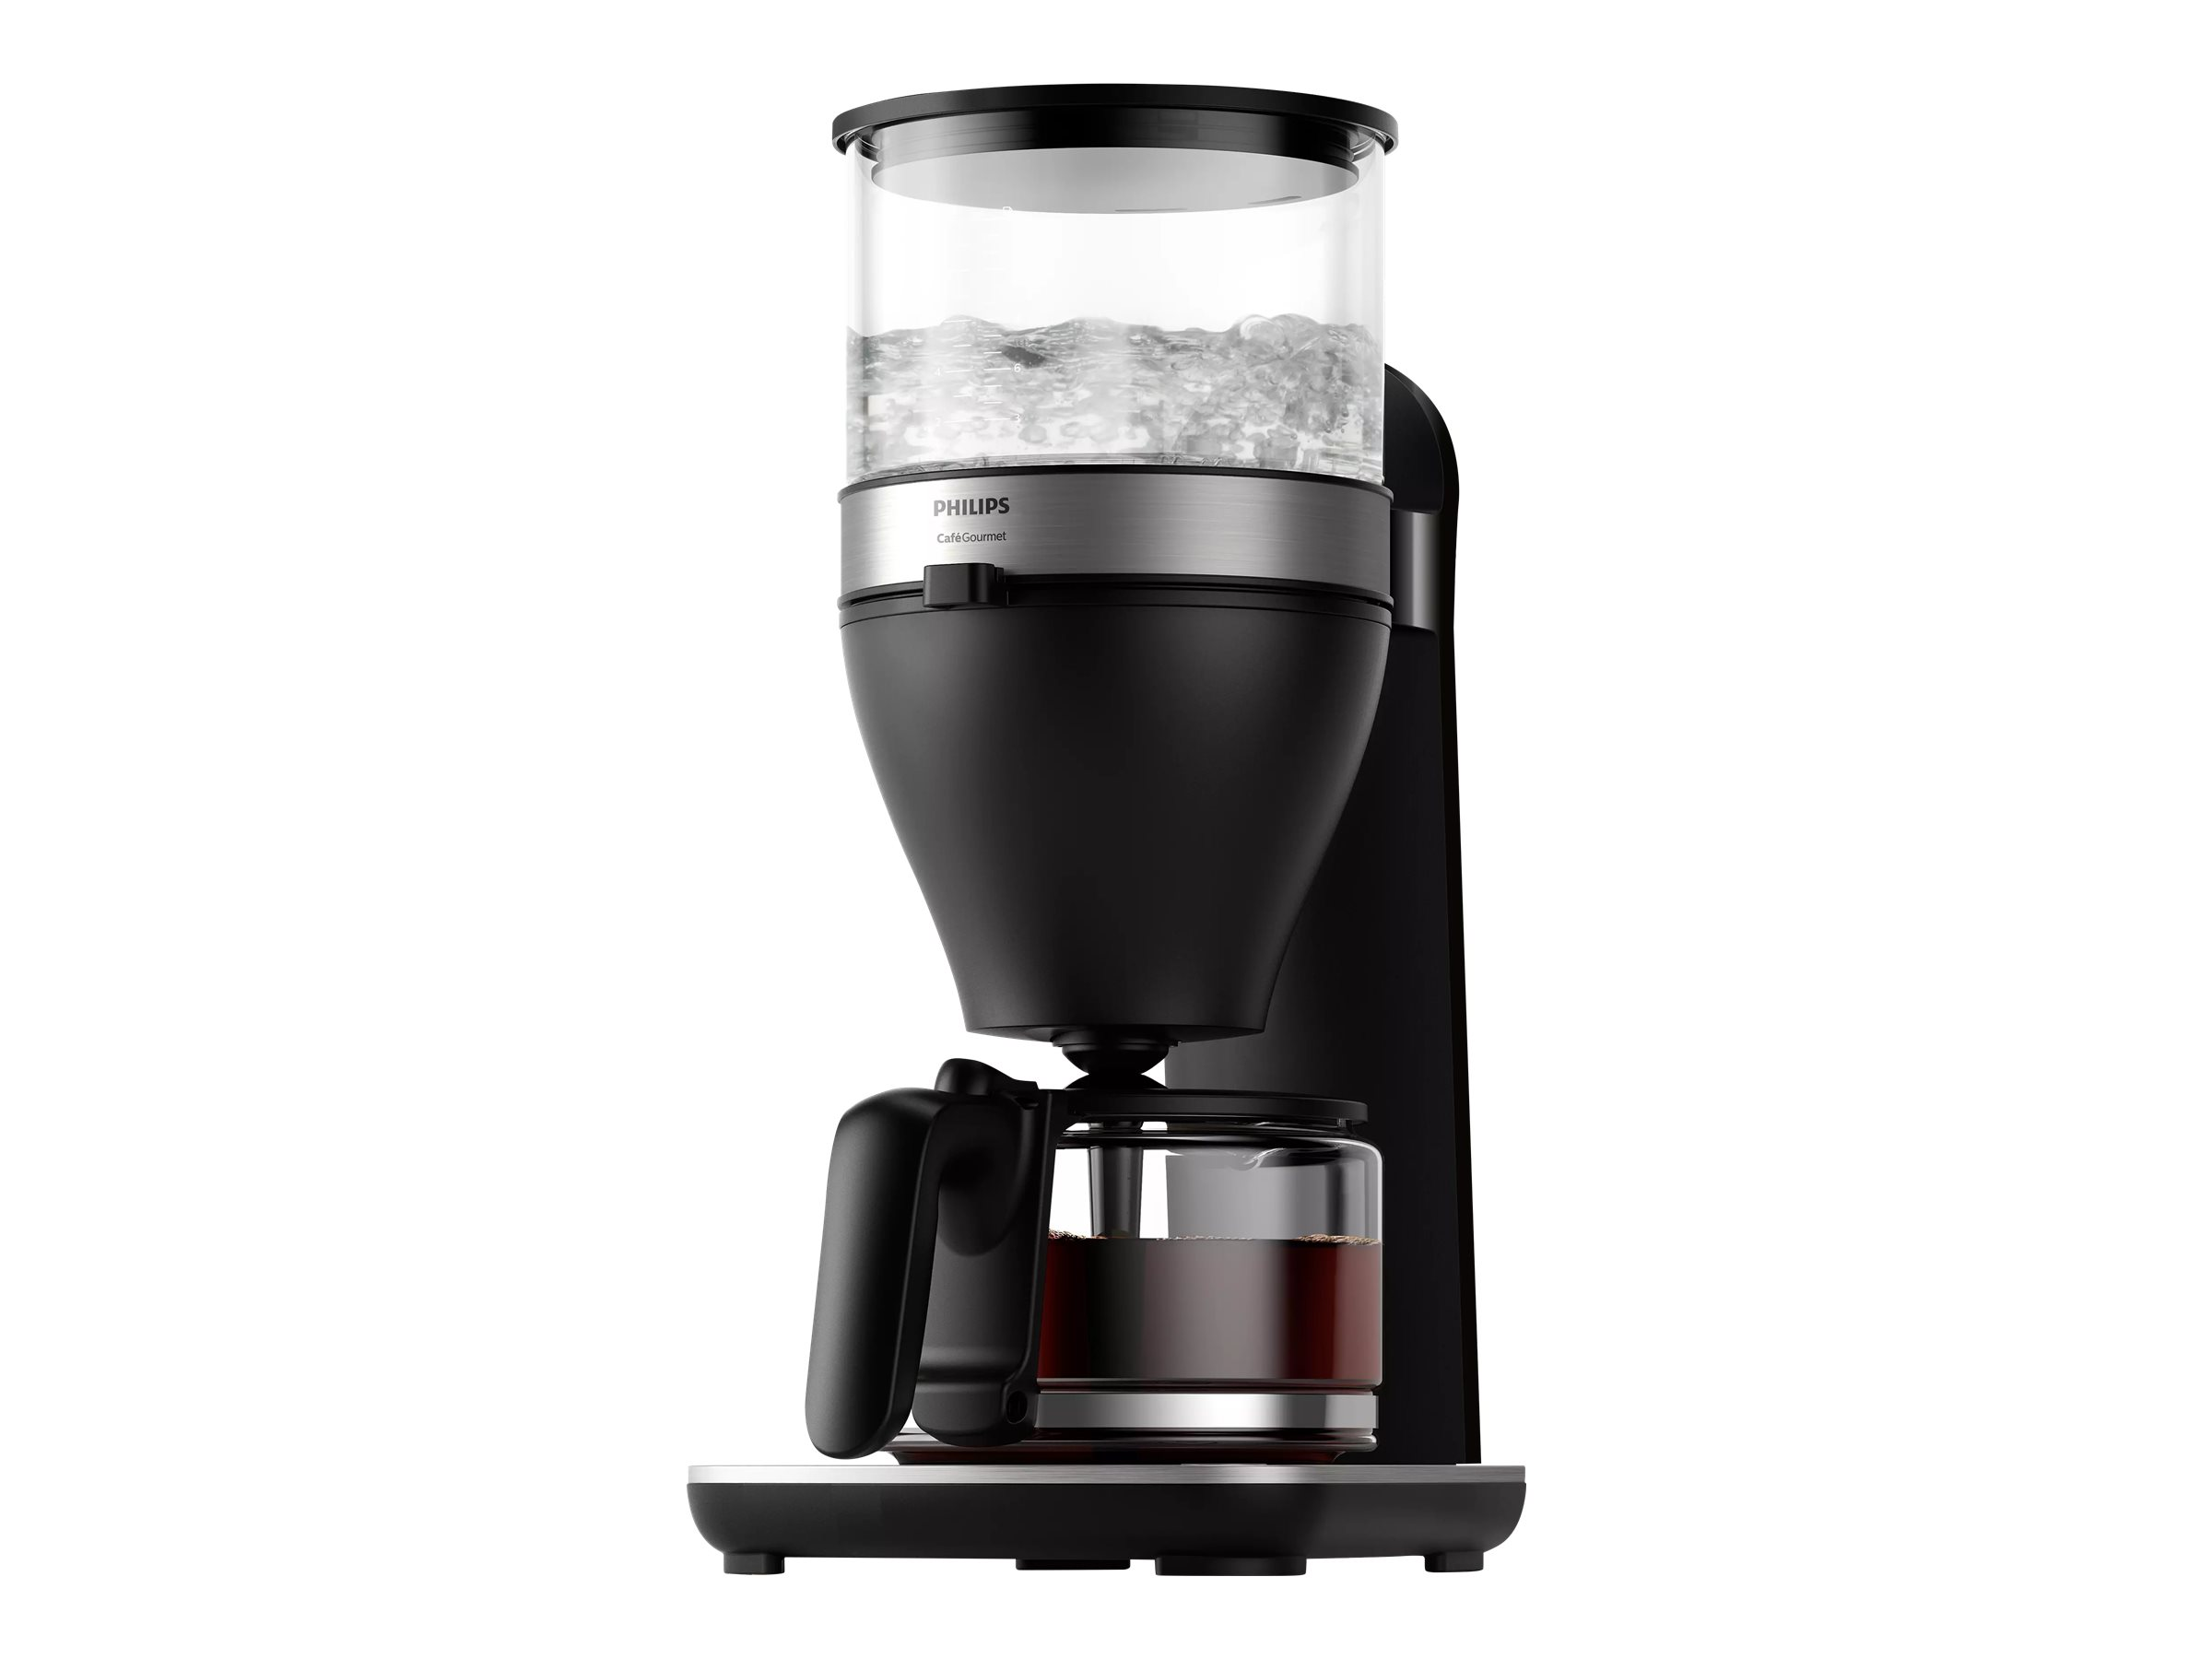 PHILIPS HD5416/60 Café Gourmet Glaskanne, mit 1,25 Liter, Schwarz 1800 Watt, Kaffeemaschine